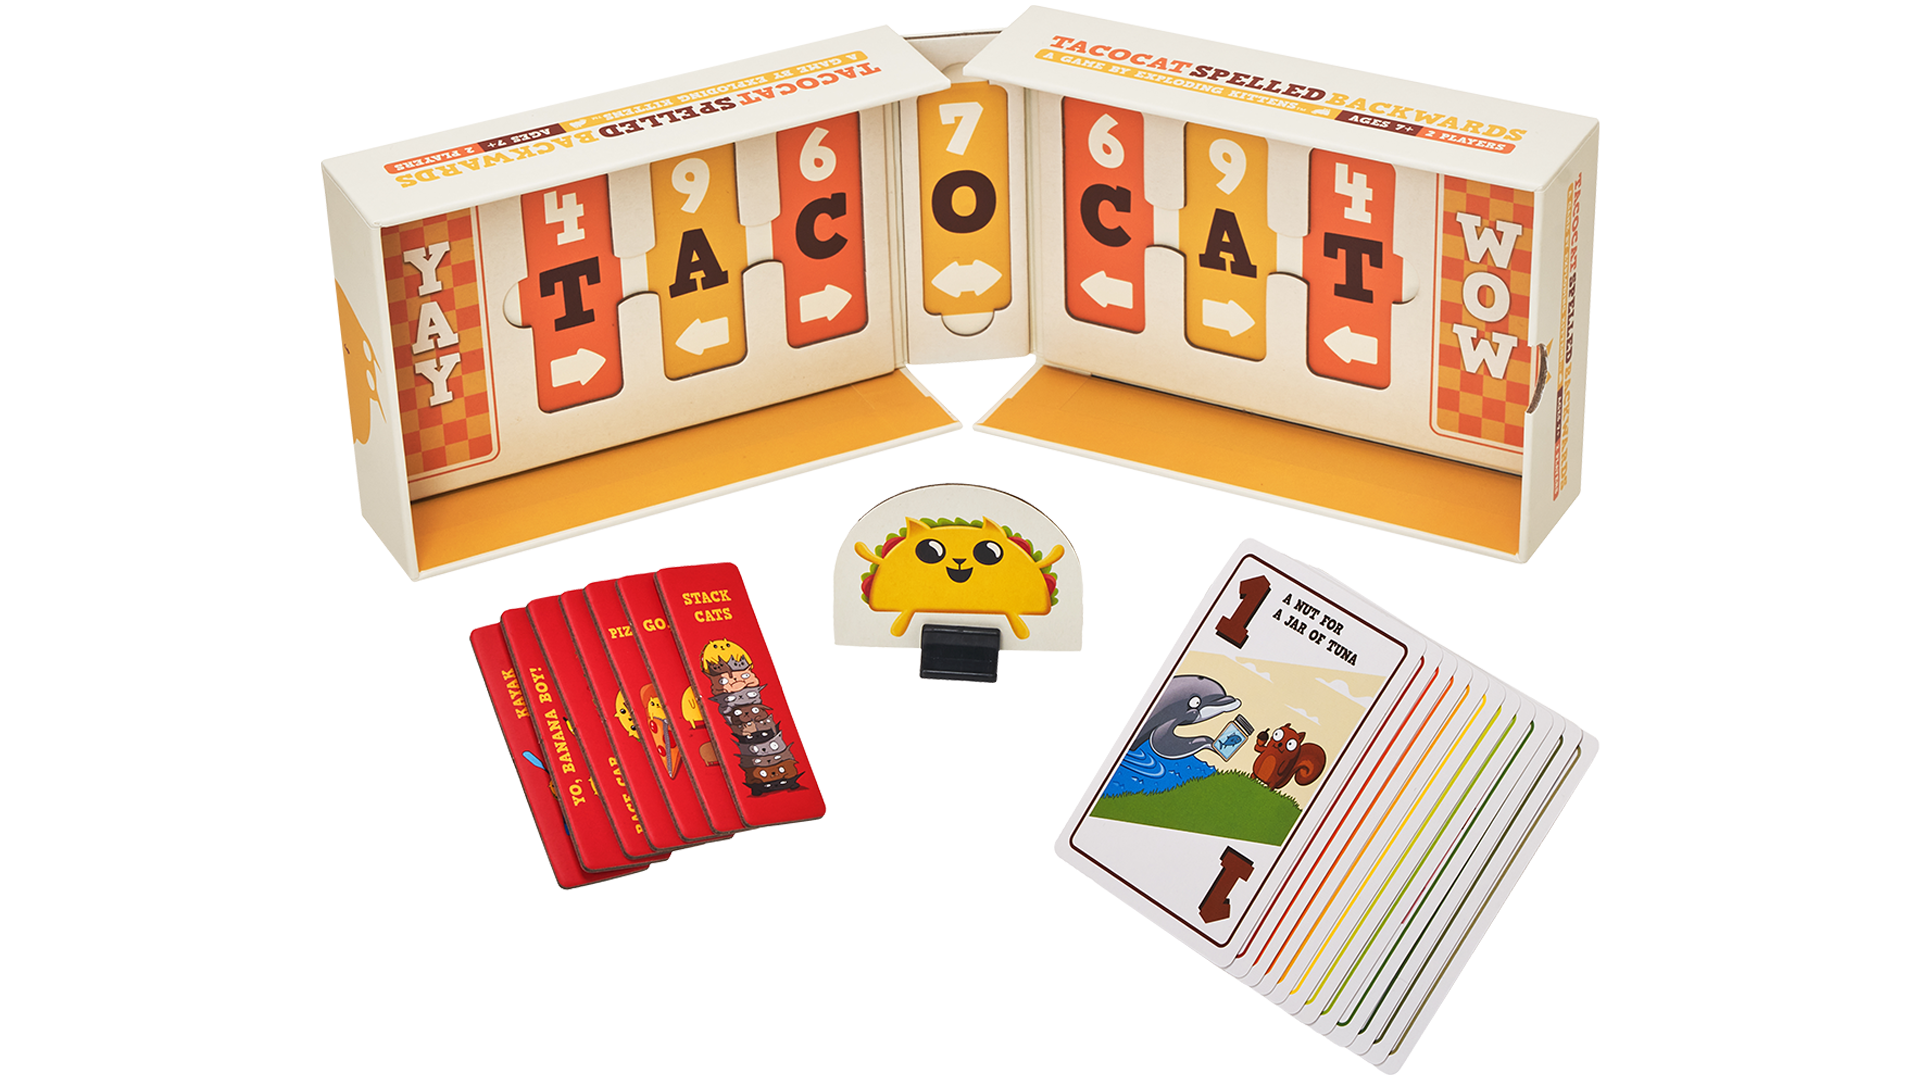 Tacocat Spelled Backwards layout image